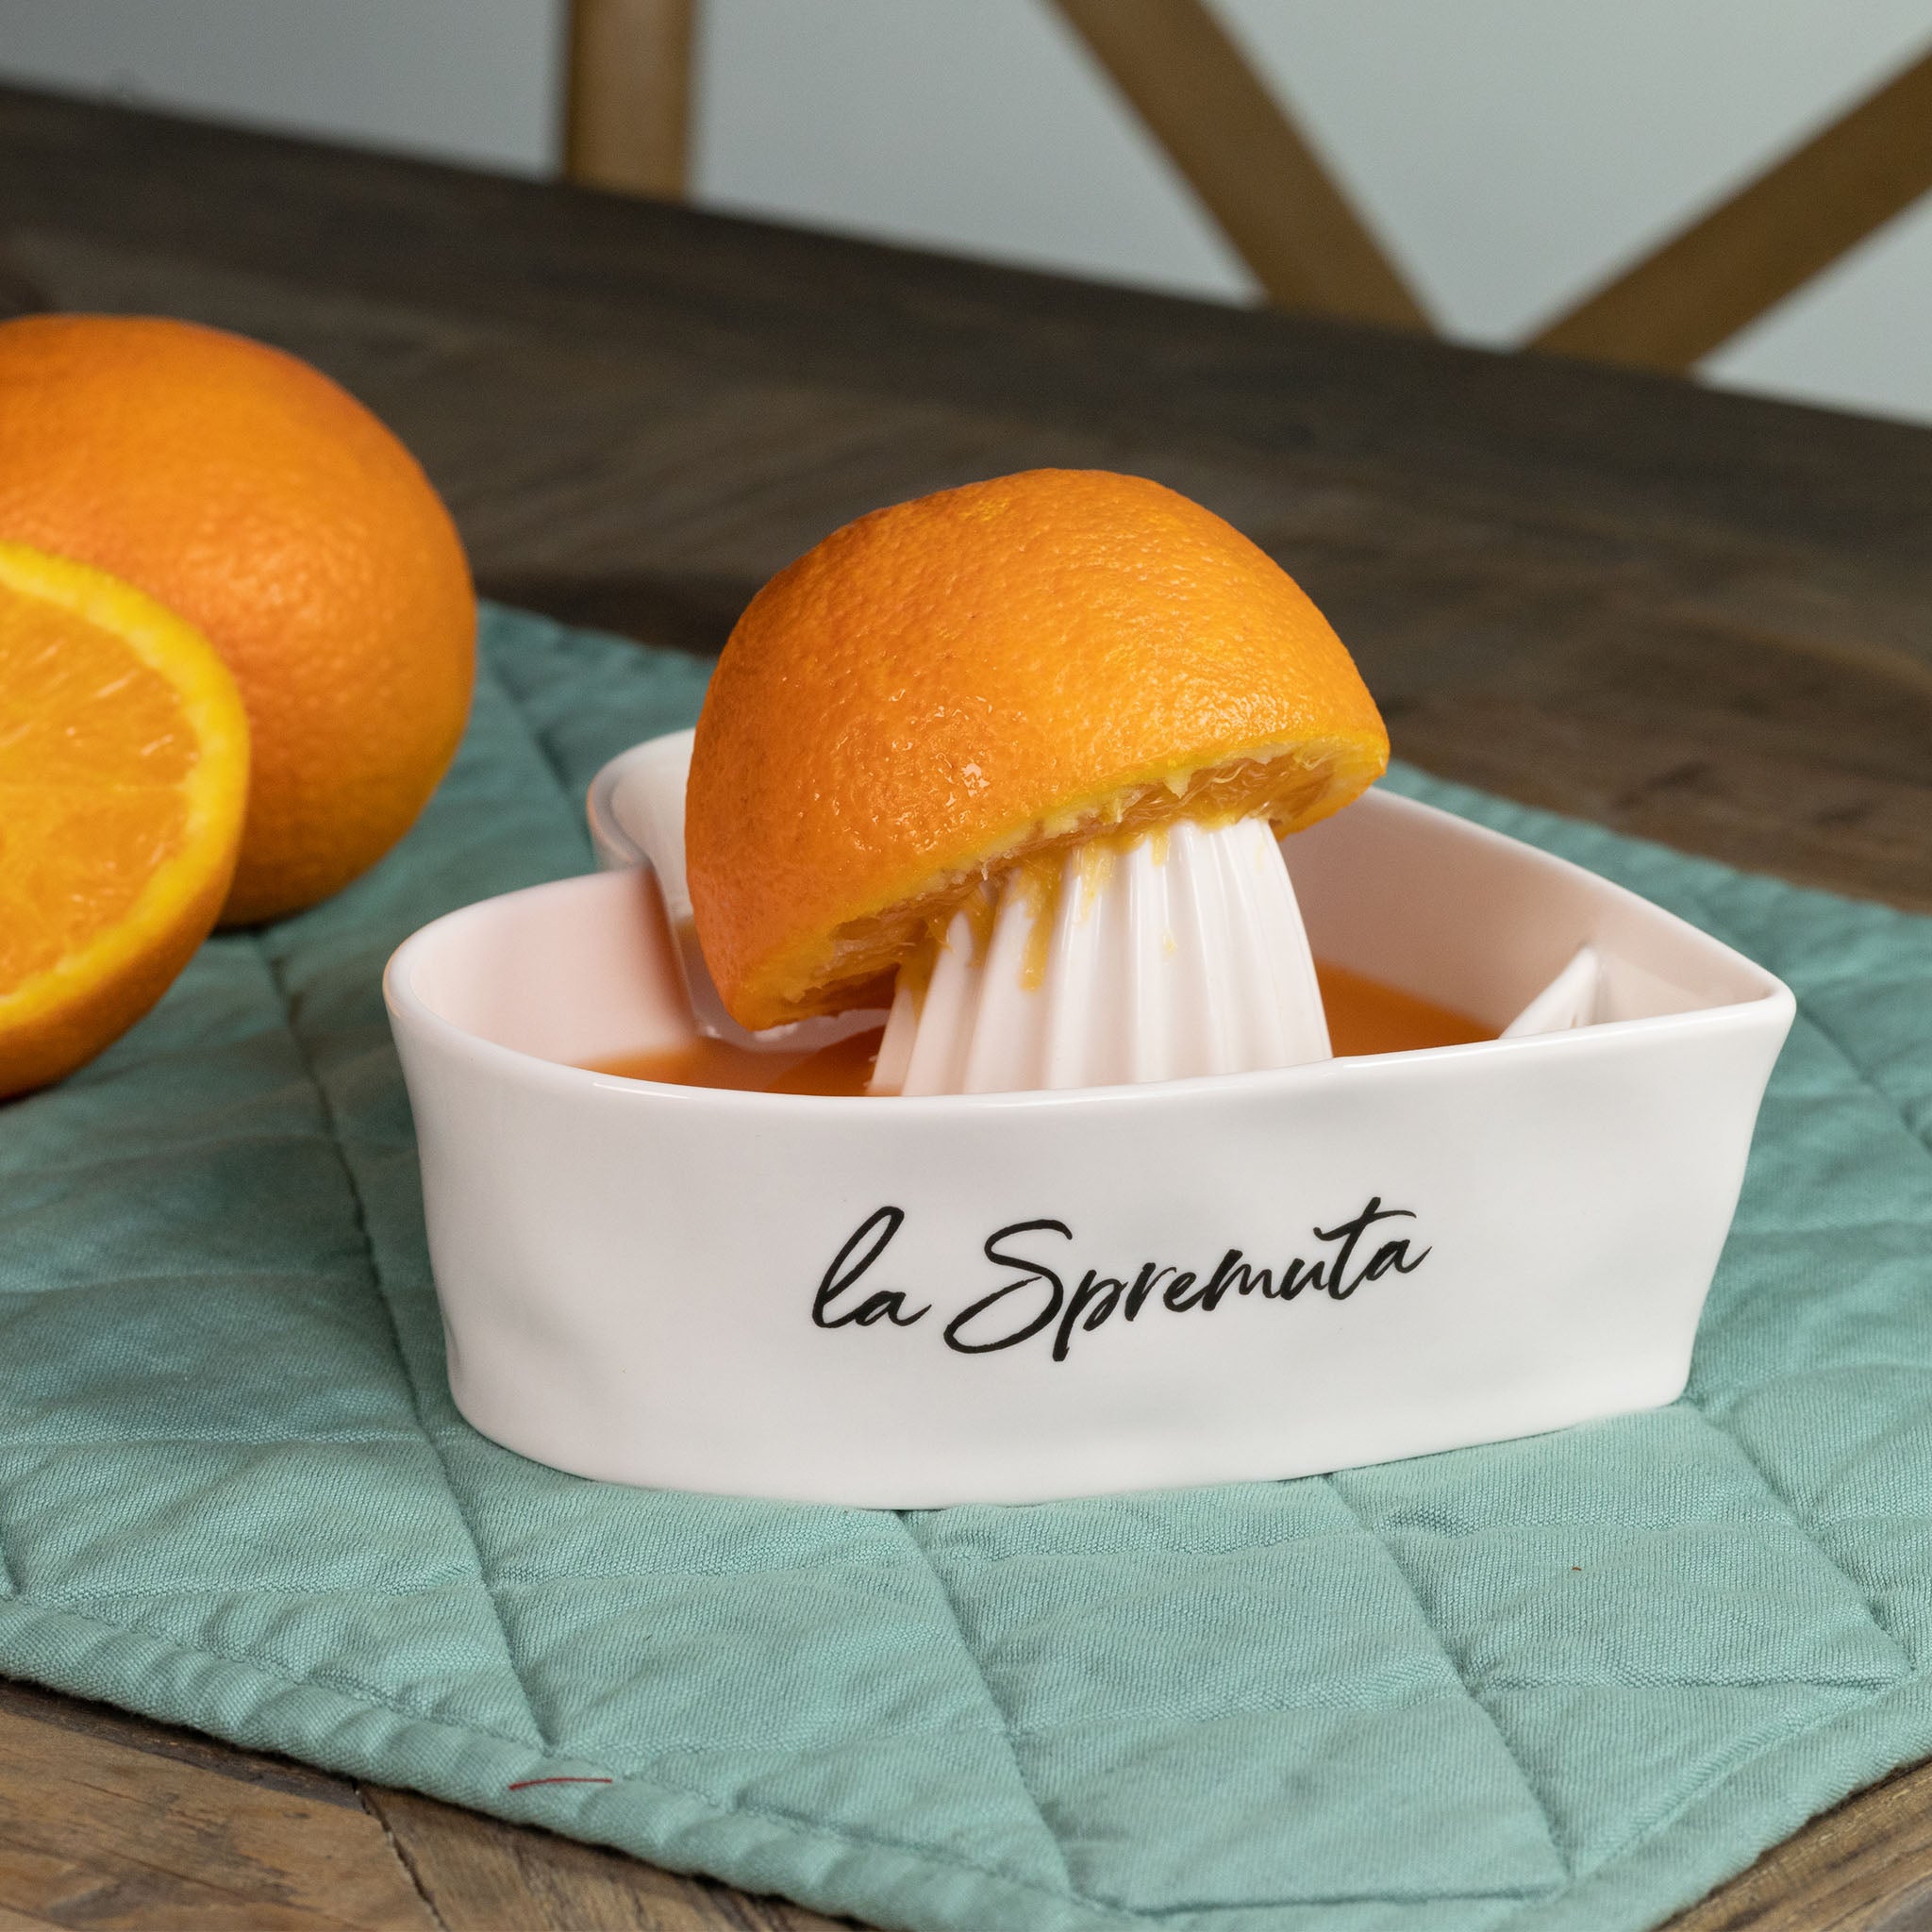 "La Spremuta" Citrus Squeezer